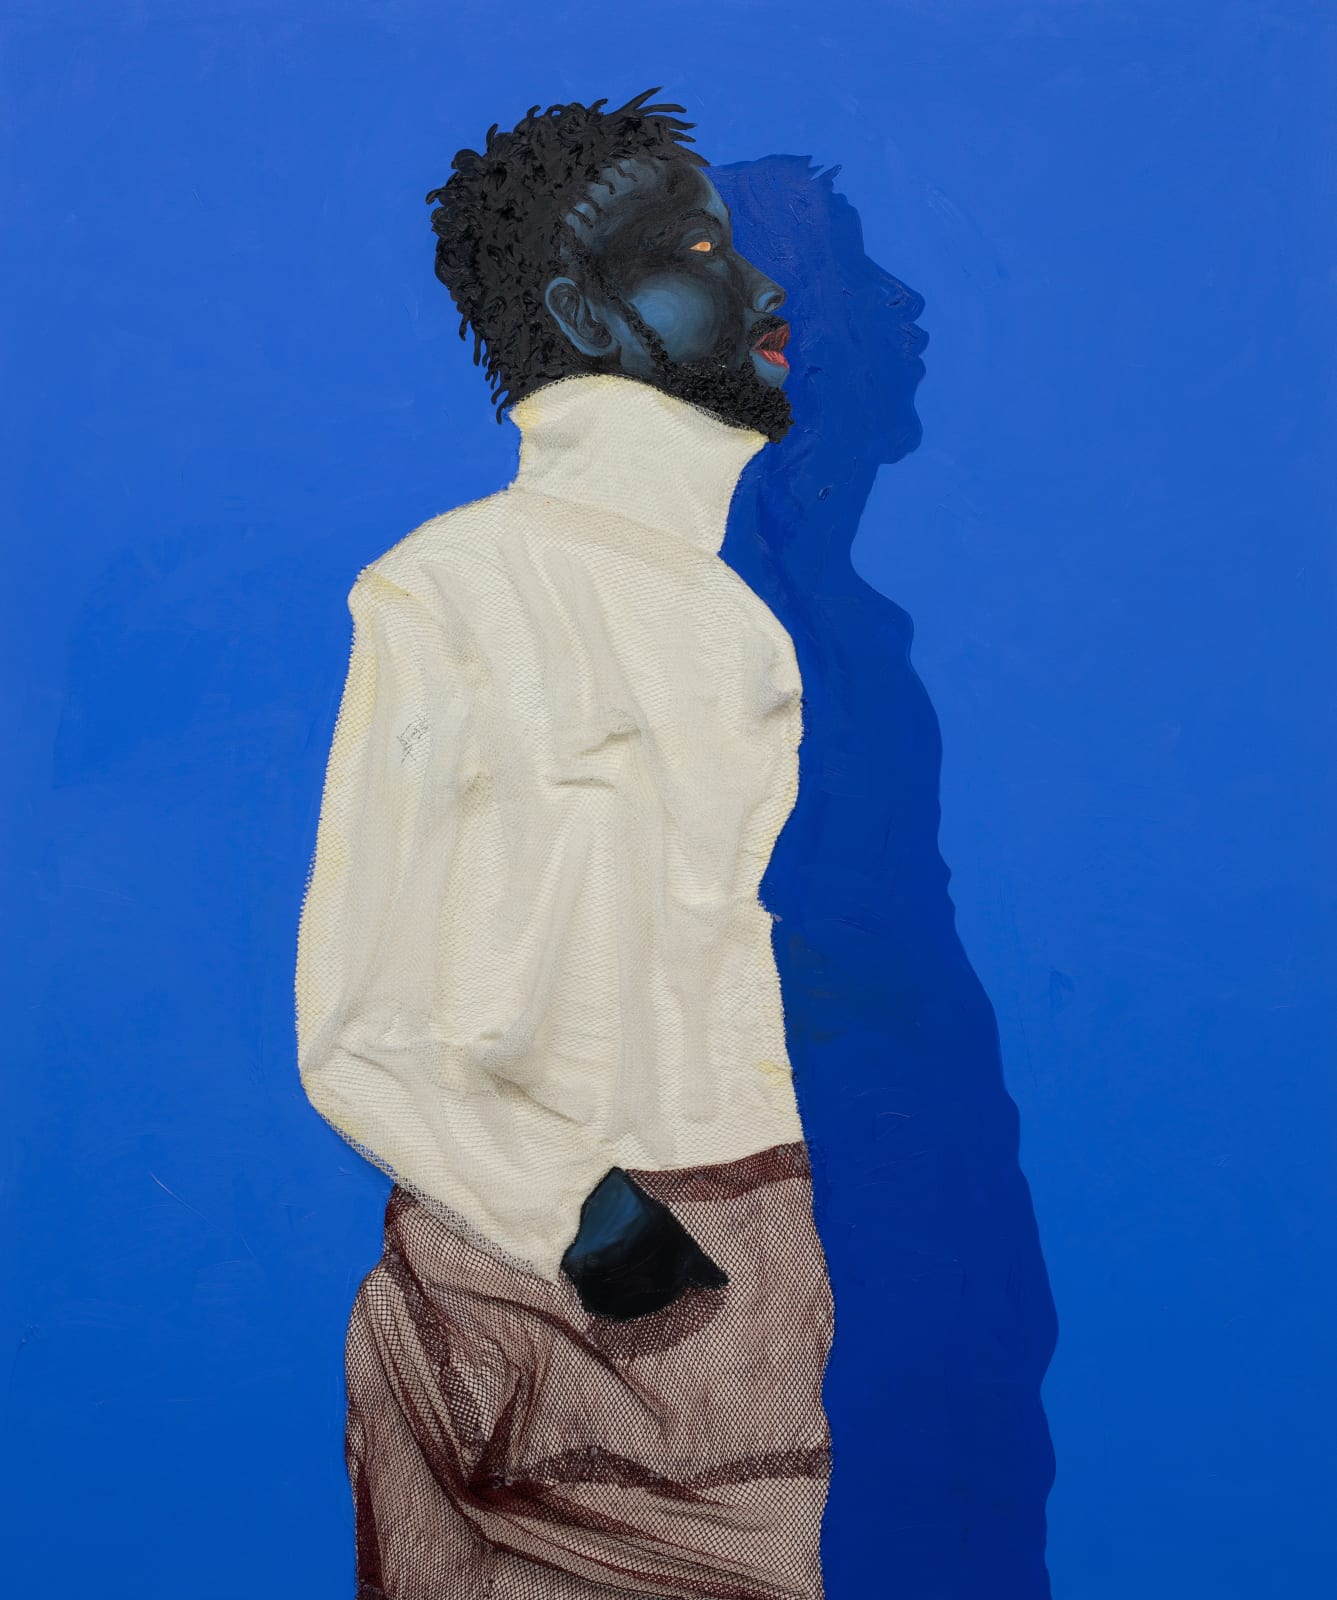 Eric Adjei Tawiah, Untitled, 2022